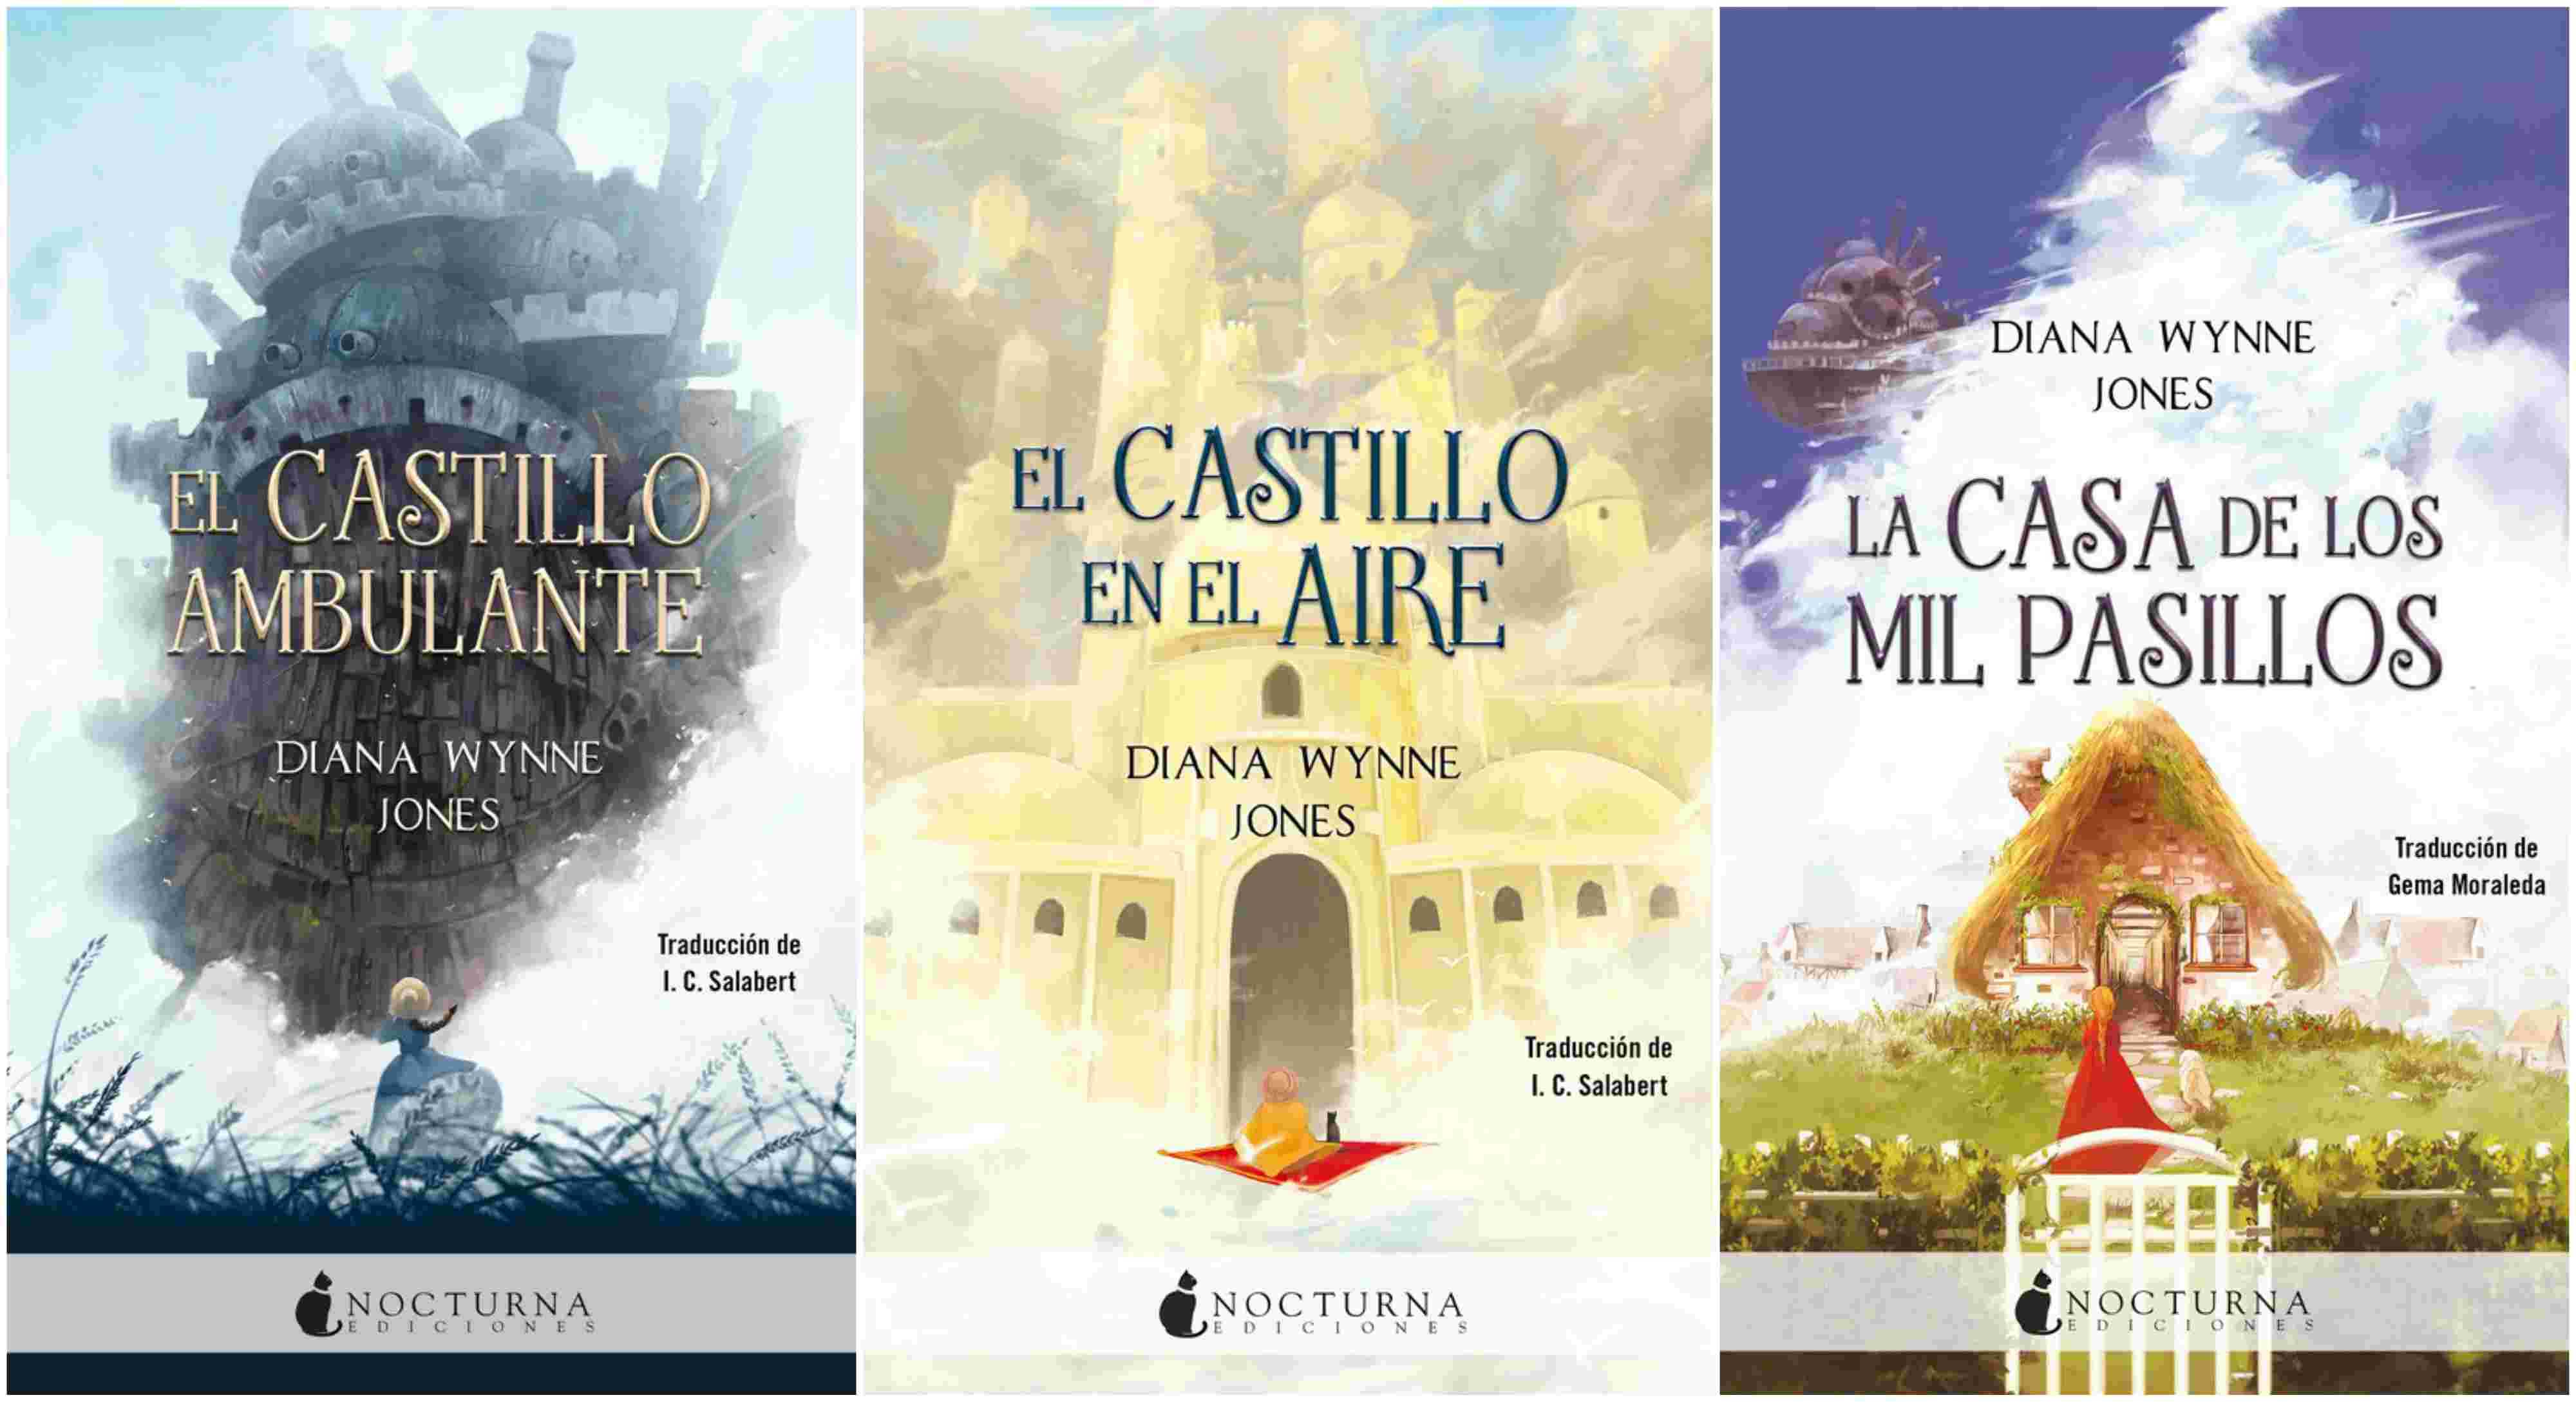 La reedición de la trilogía El Castillo Ambulante muestra unas